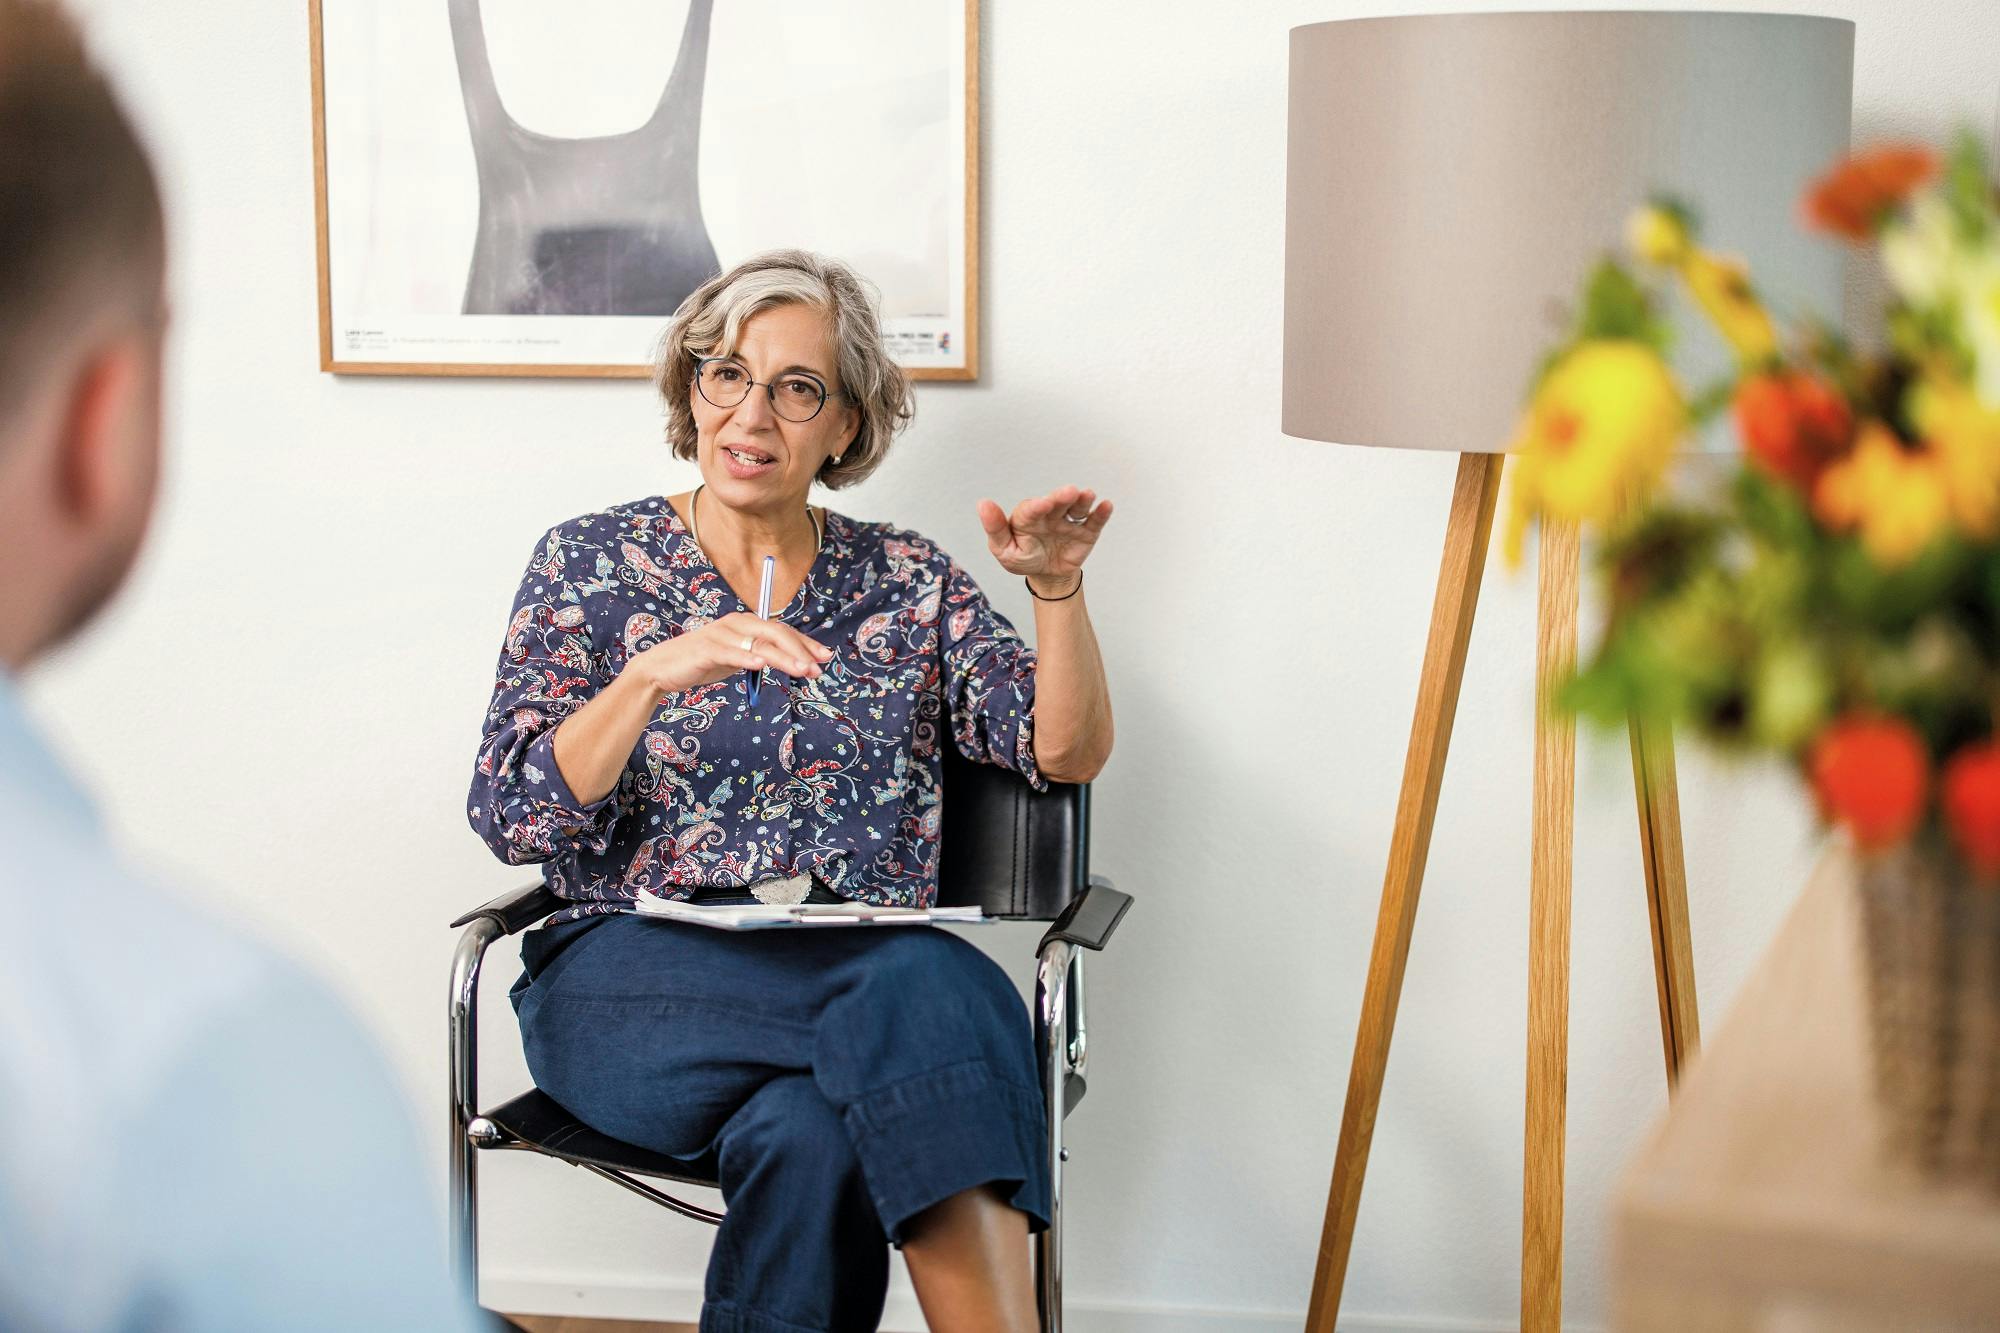 Frau im Rollstuhl mit Brille gestikuliert beim Sprechen in einem hellen Raum.